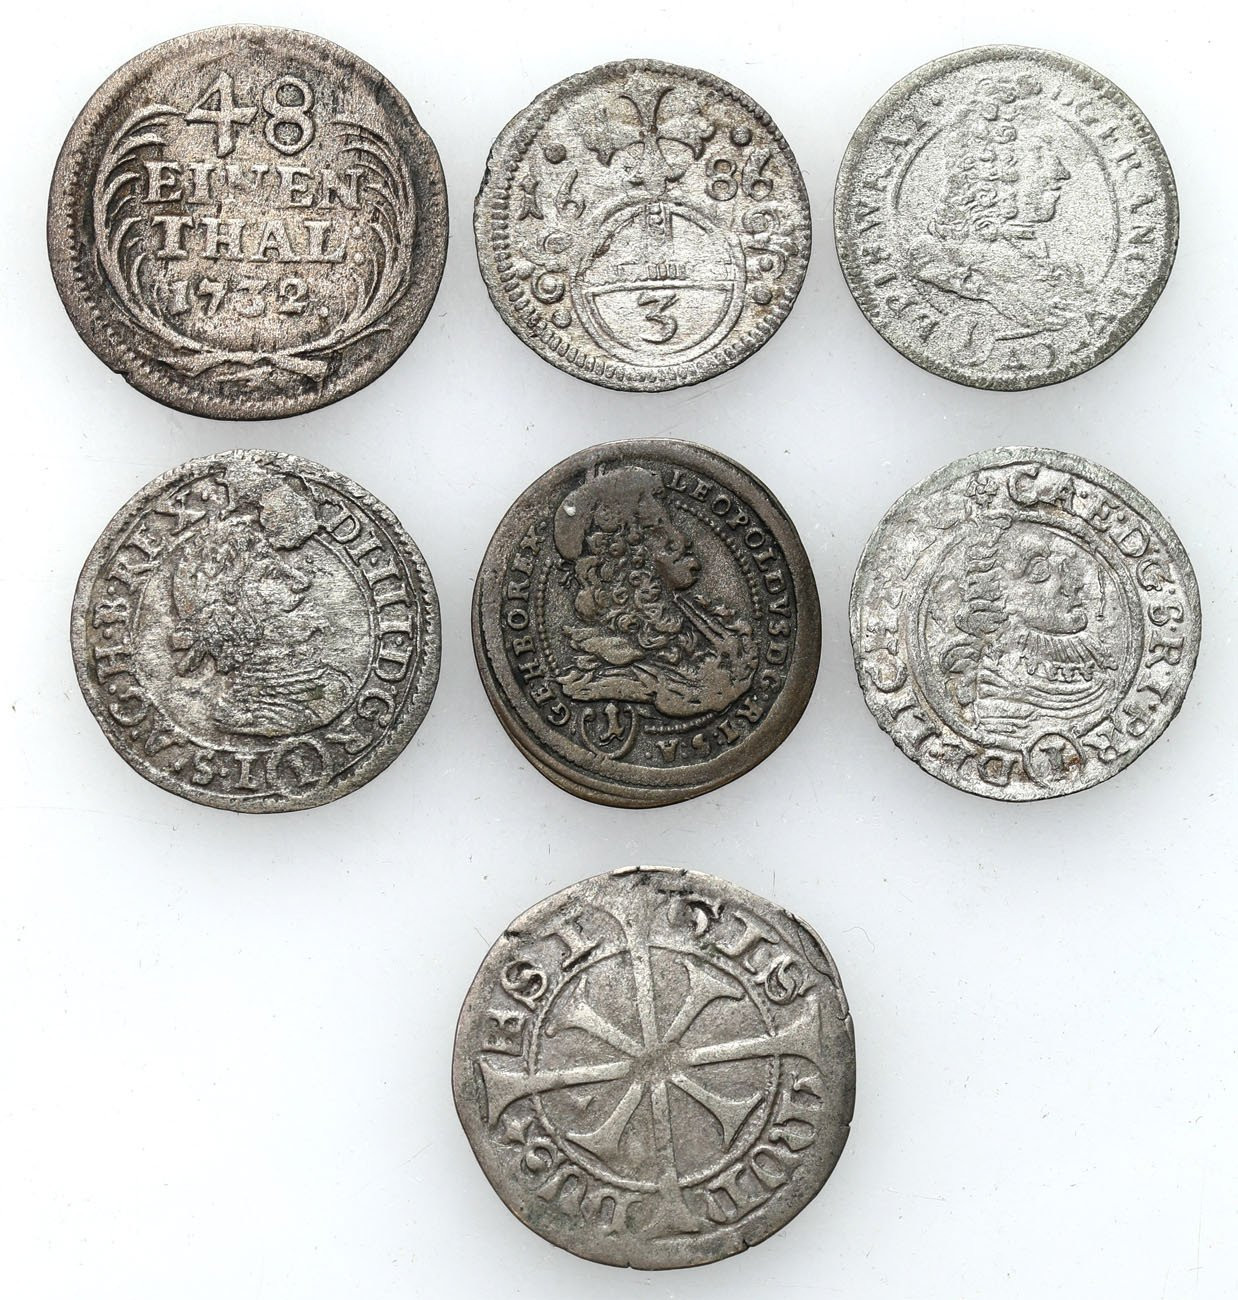 Europa, XVII-XVIII wiek. Krajcar, 1/48 talara, 3 greszele, zestaw 7 monet.